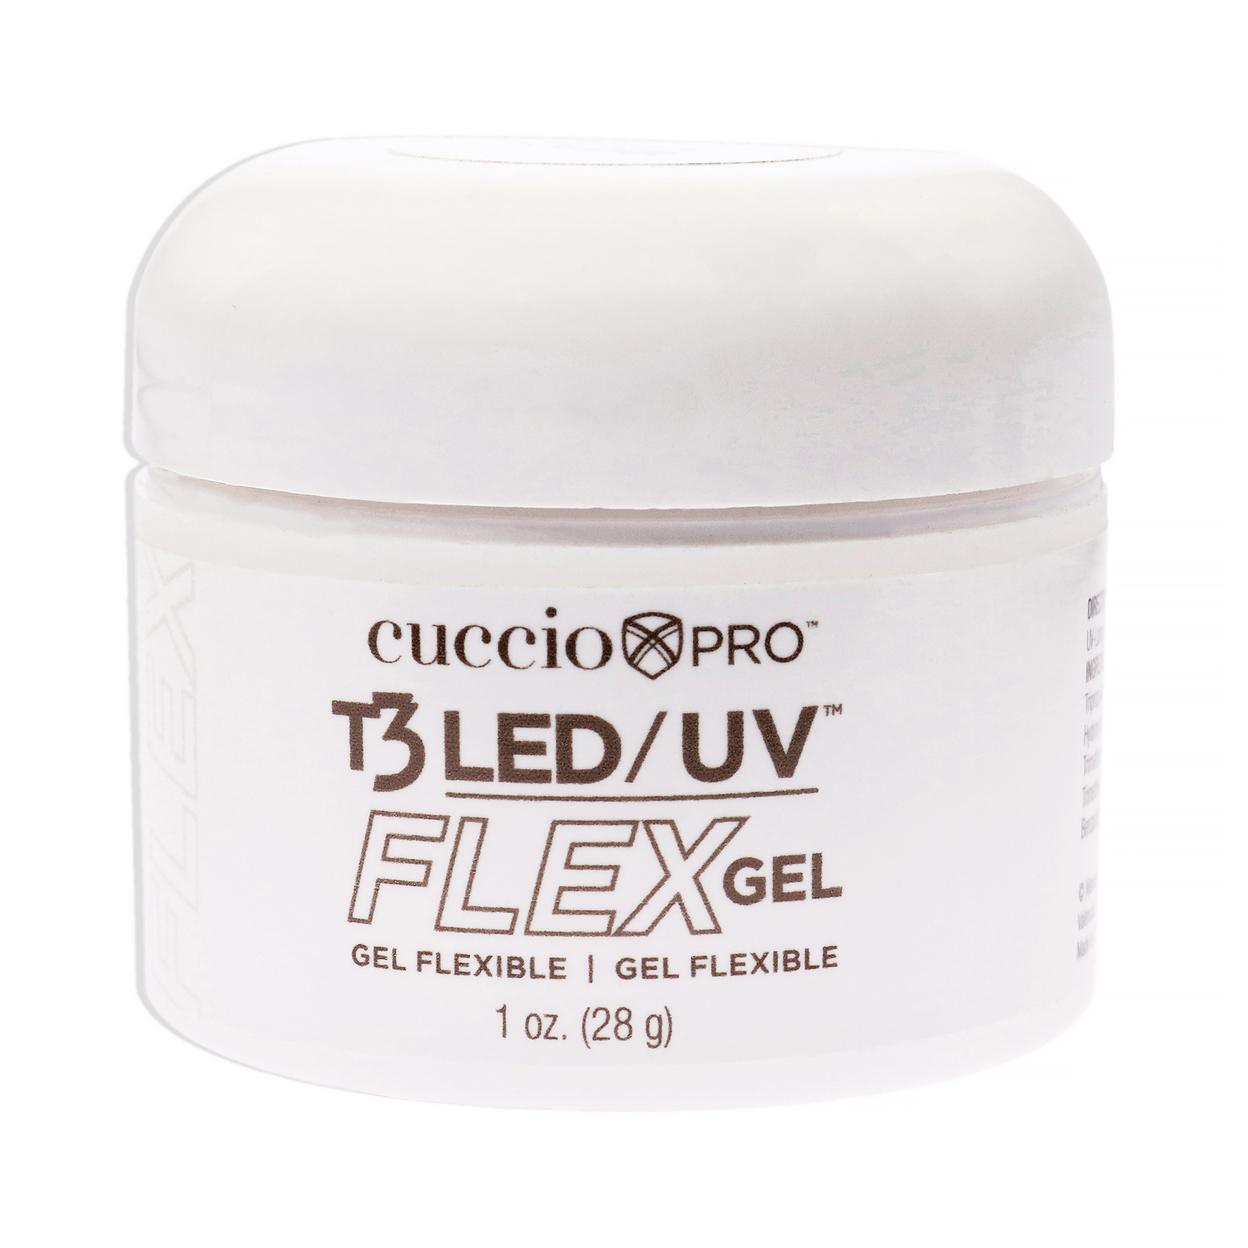 Cuccio Pro T3 LED-UV Flex Gel - Clear Nail Gel 1 Oz